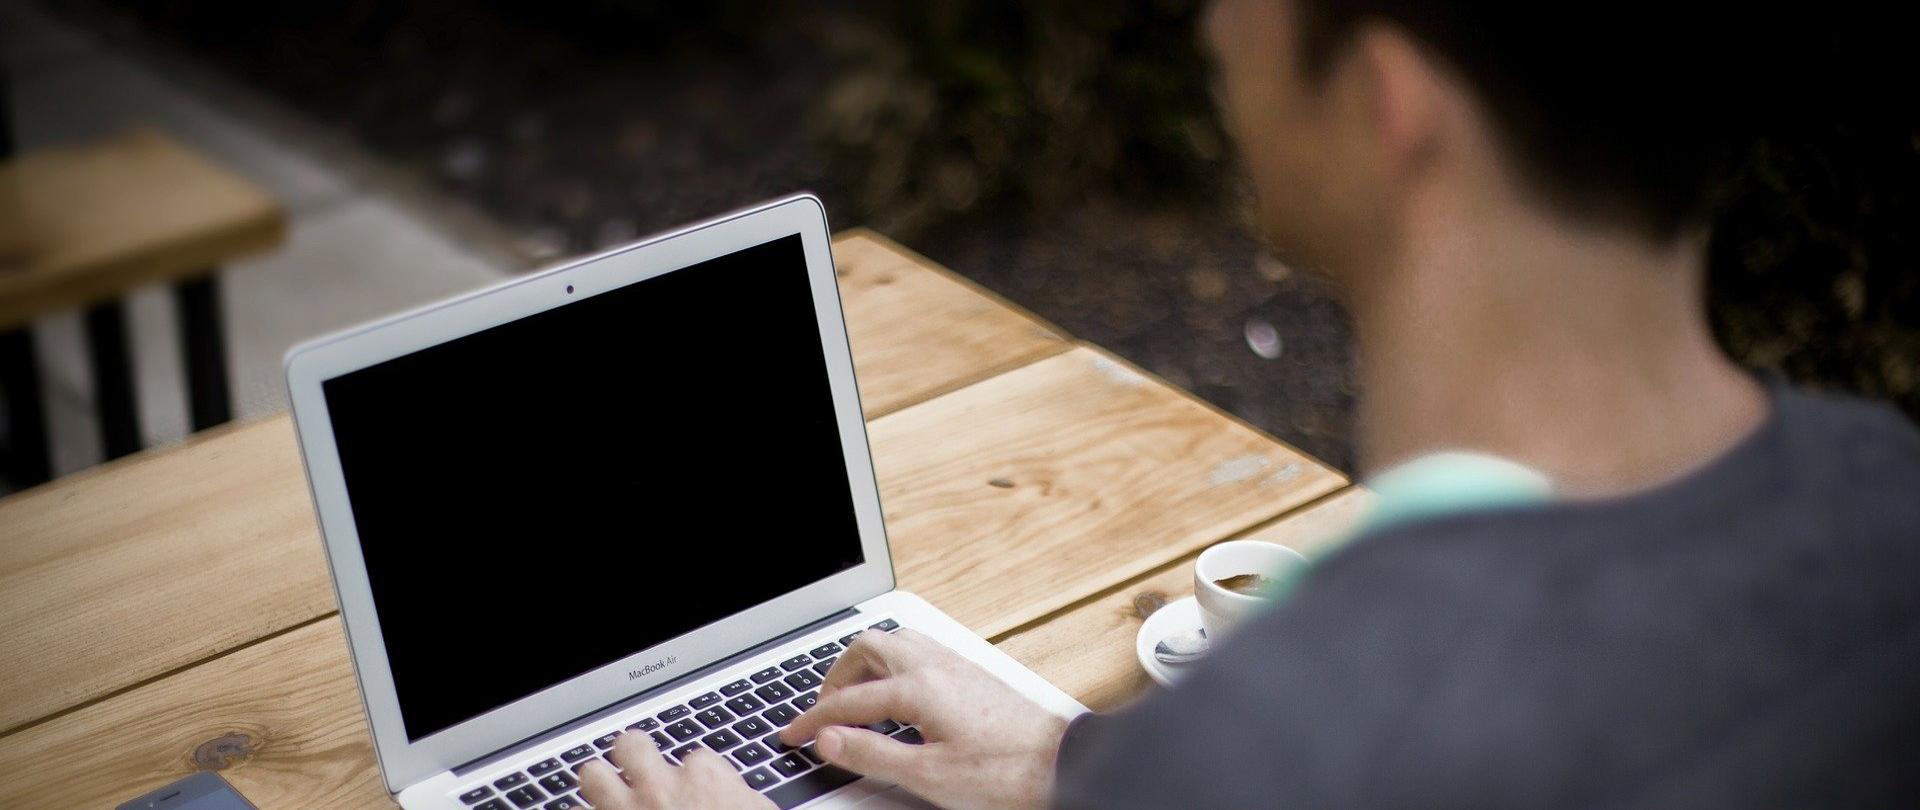 Na zdjęciu mężczyzna siedzi przy drewniany stole i pisze na laptopie. Na stole obok laptopa leży telefon komórkowy i notes z długopisem, obok stoi filiżanka z kawą.